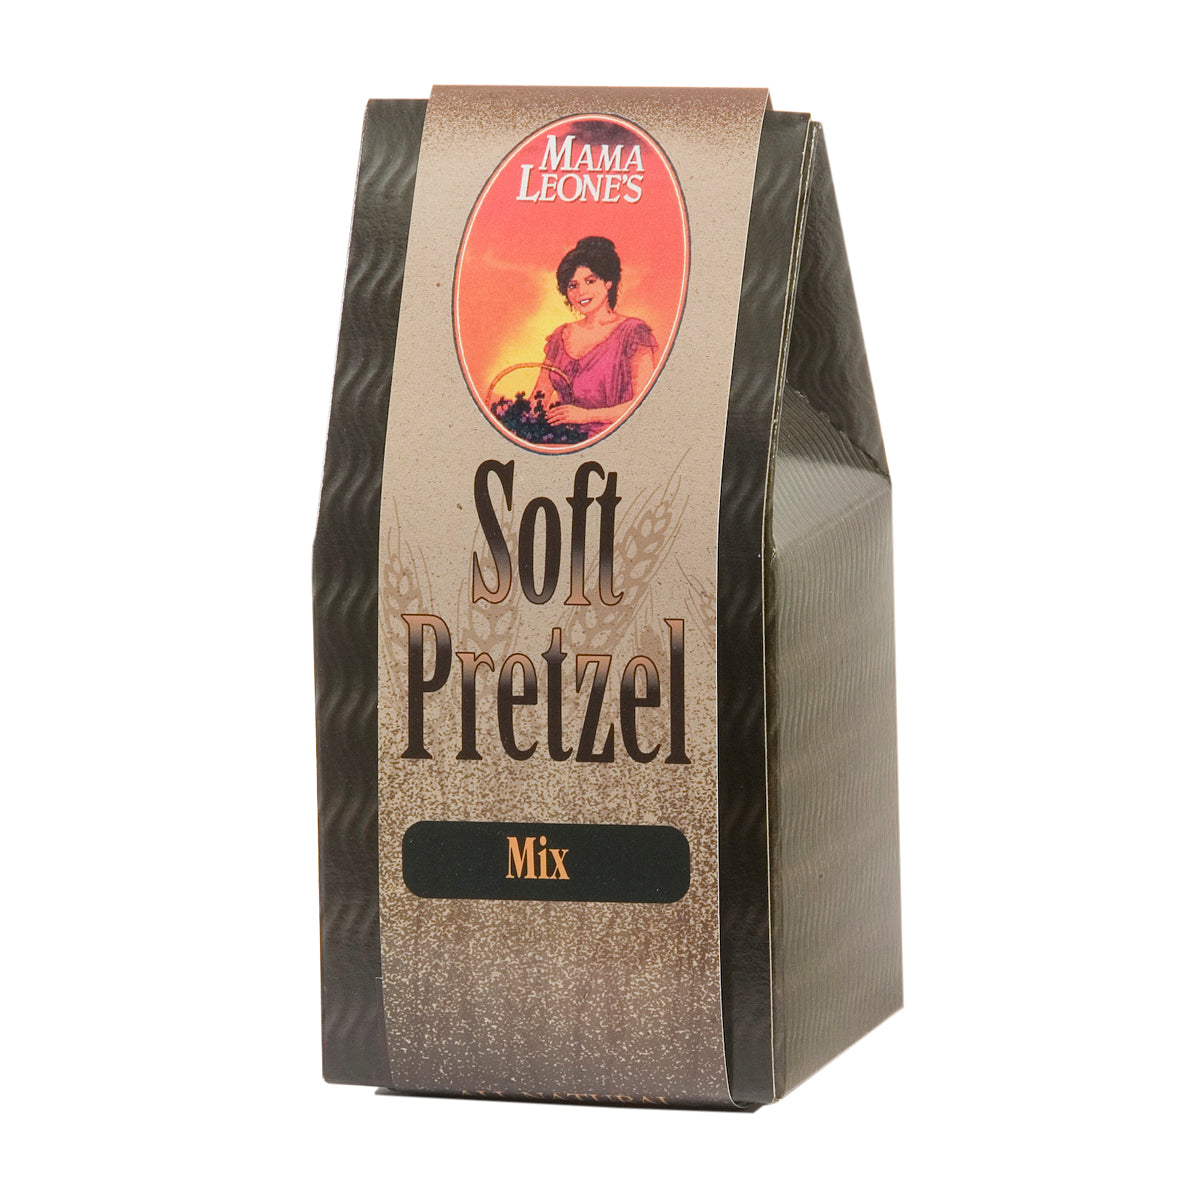 Soft Pretzel Mix